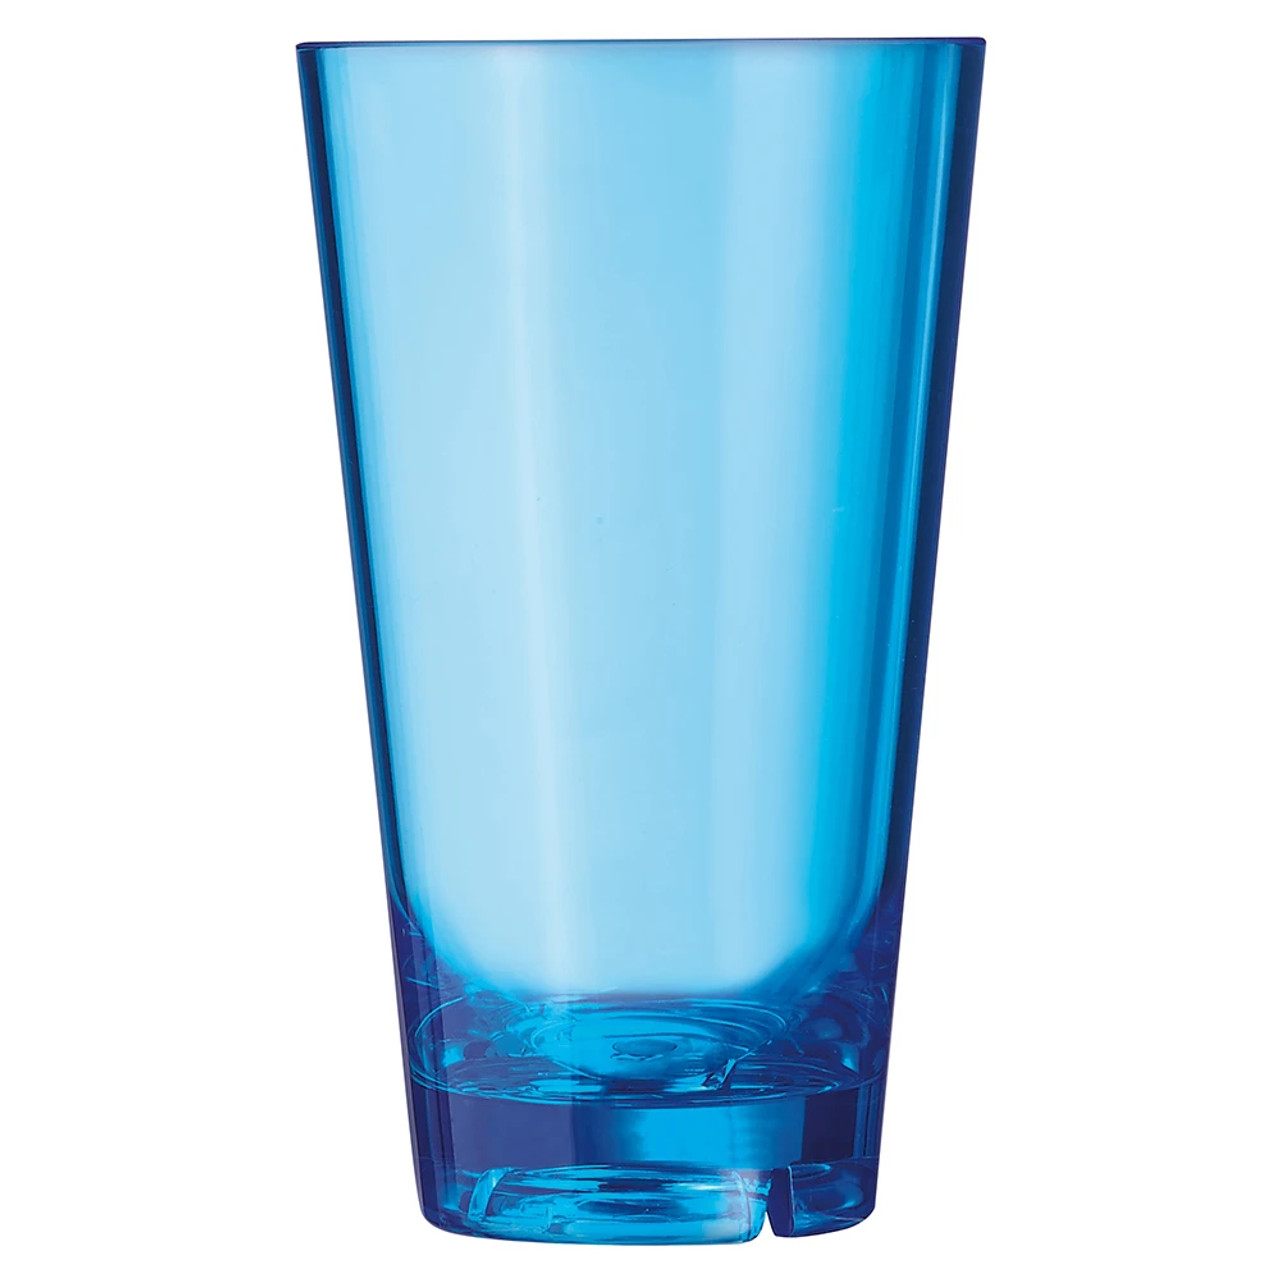 Arcoroc 19 3/4 oz Outdoor Glass w/ Water Vent, Blue (36/Case) - Dishwasher Safe - Chicken Pieces